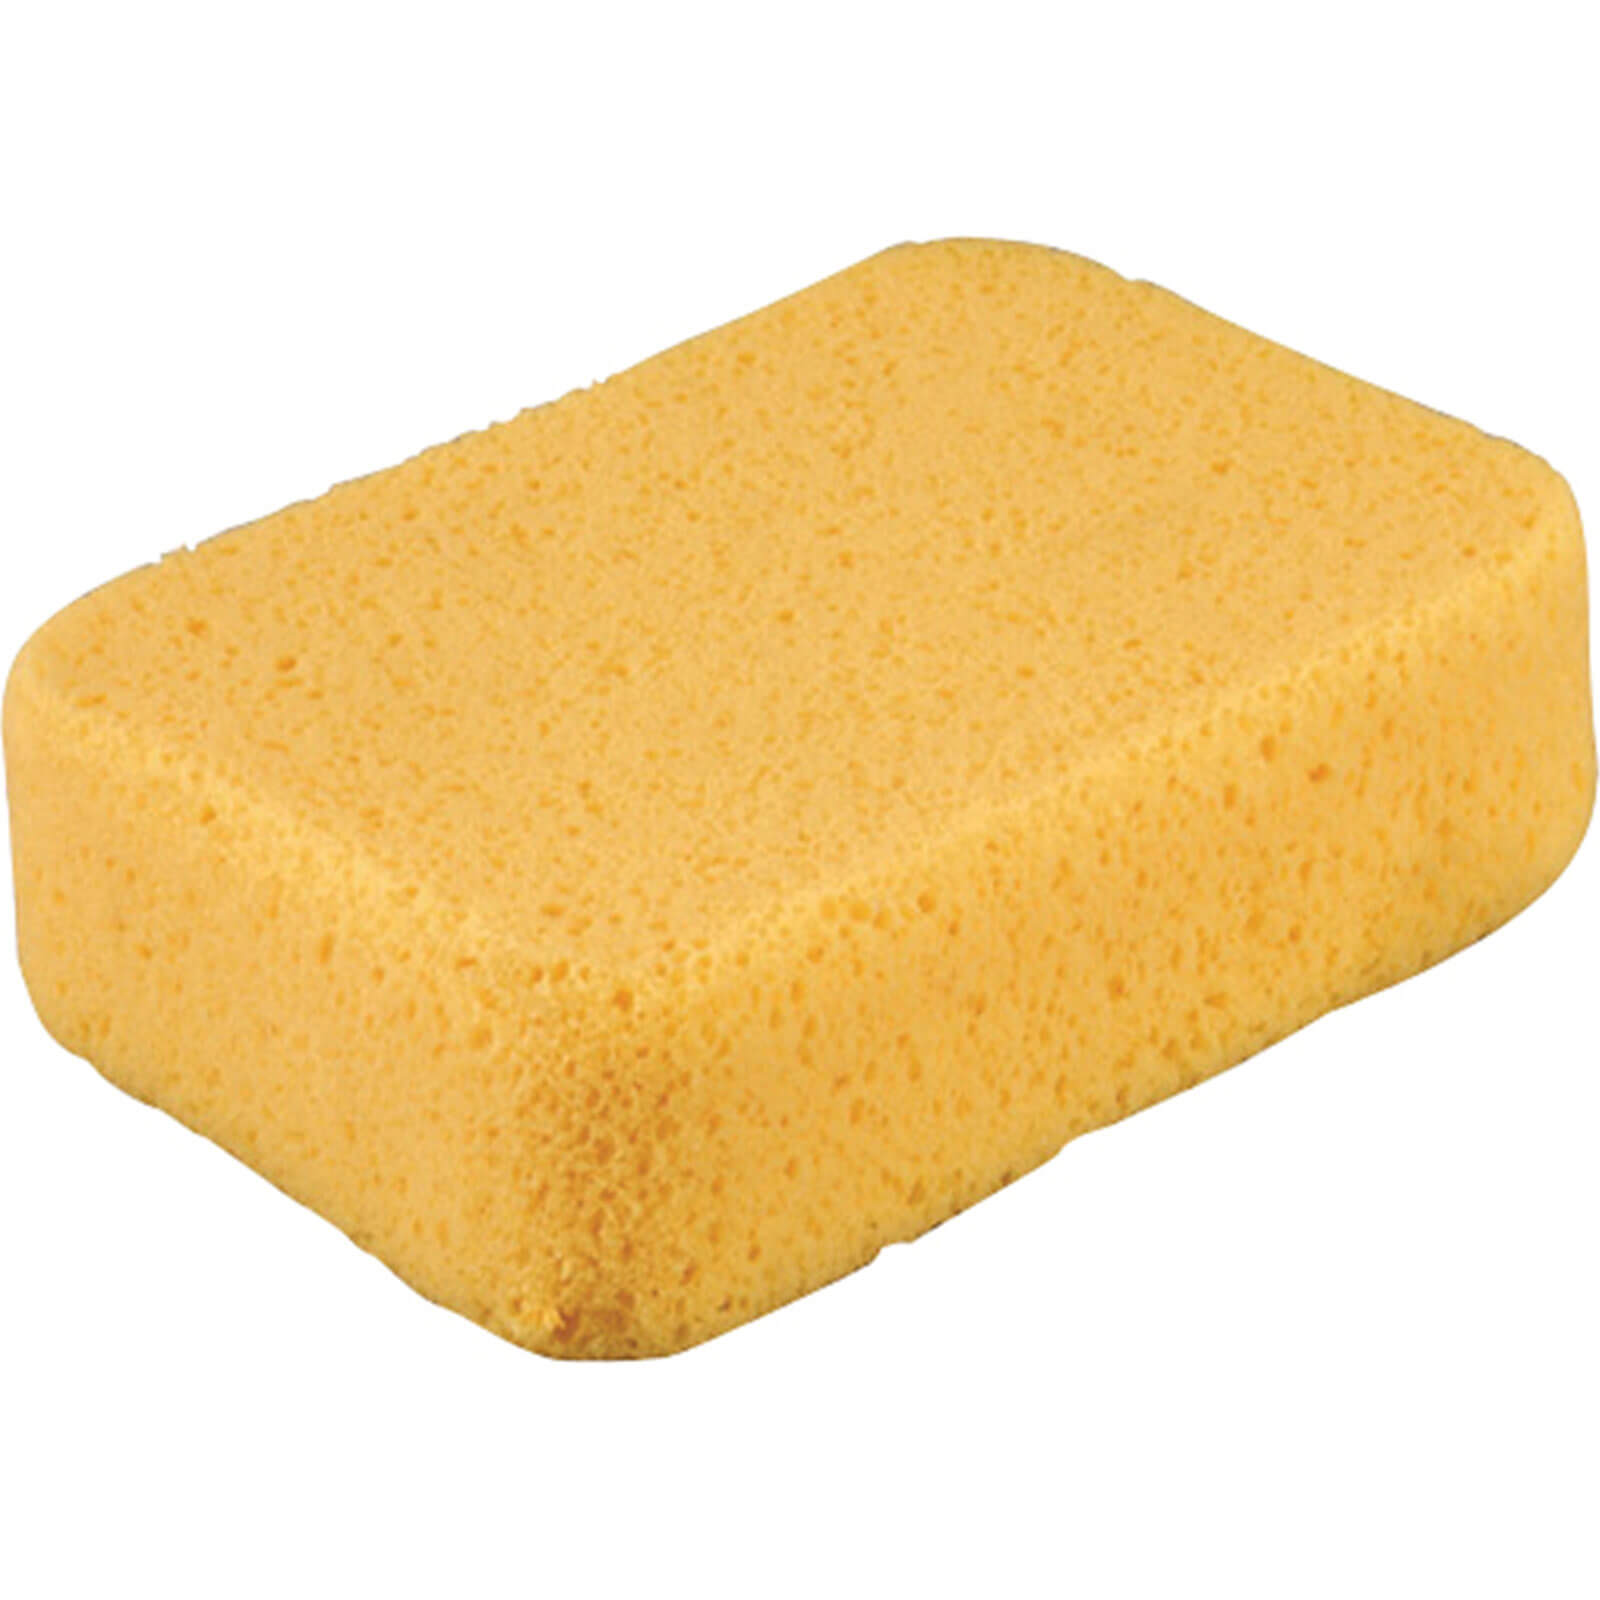 Photo of Vitrex Extra Large Super Sponge